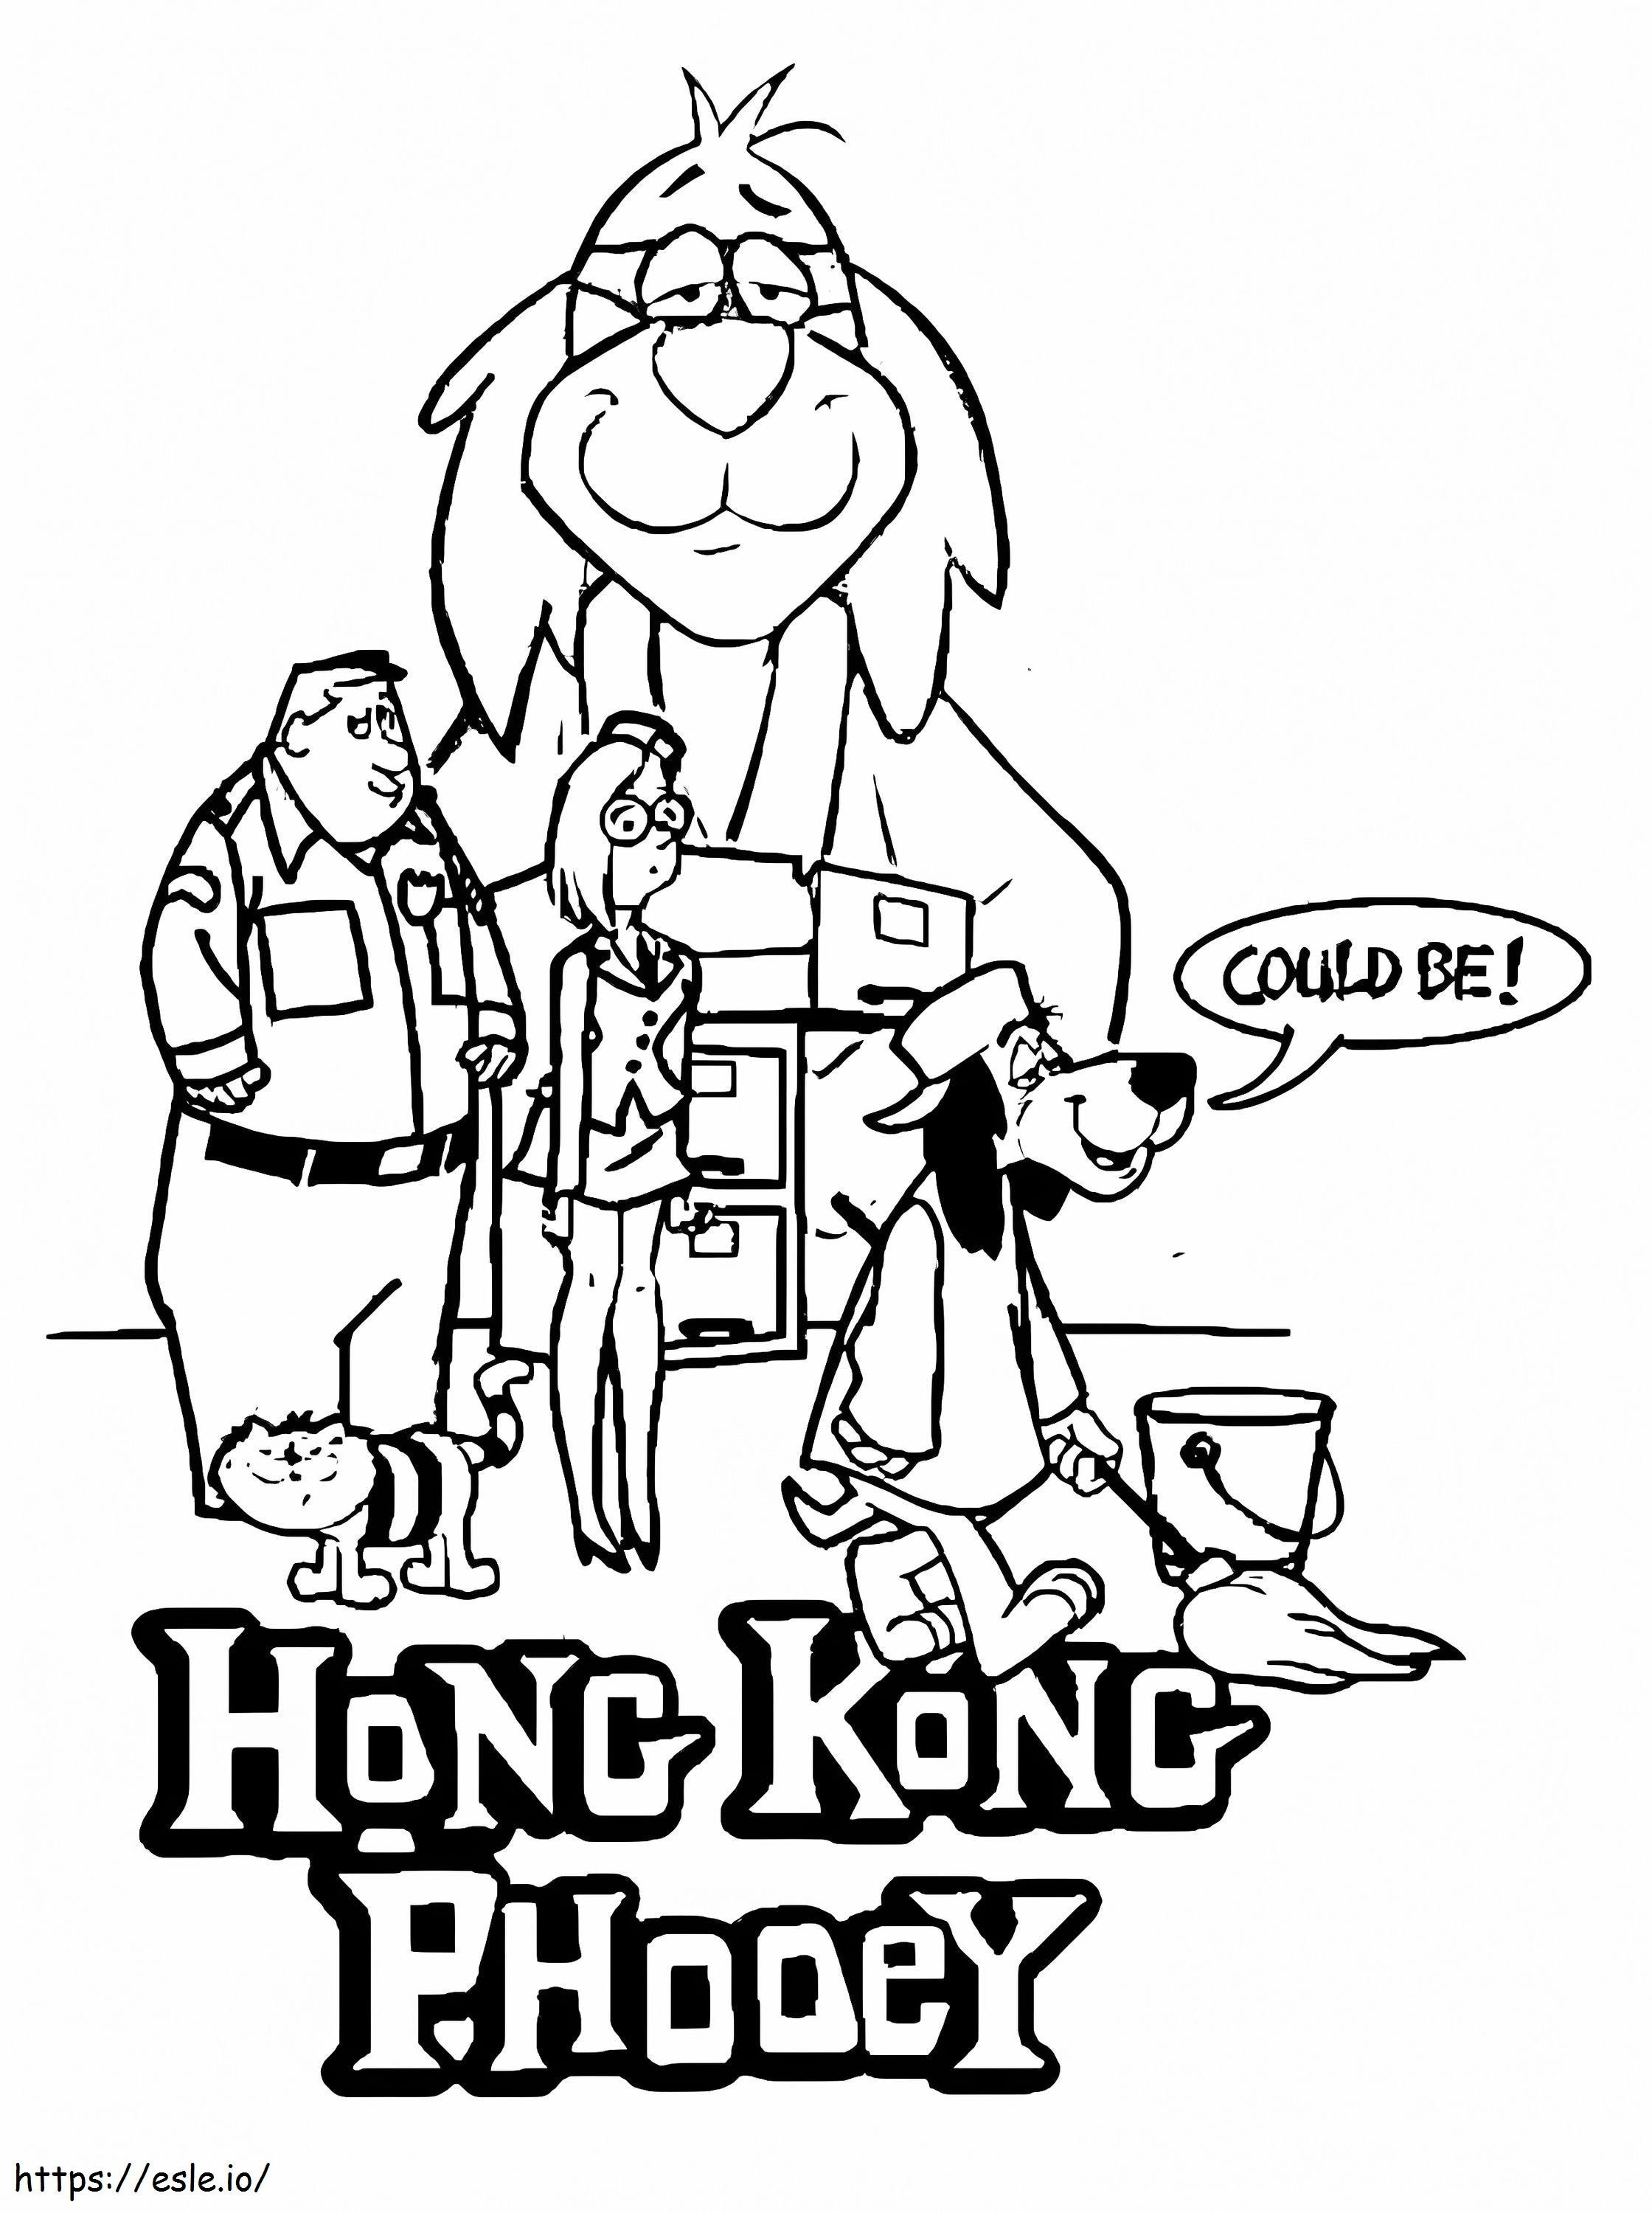 Karakter Hong Kong Phooey Gambar Mewarnai